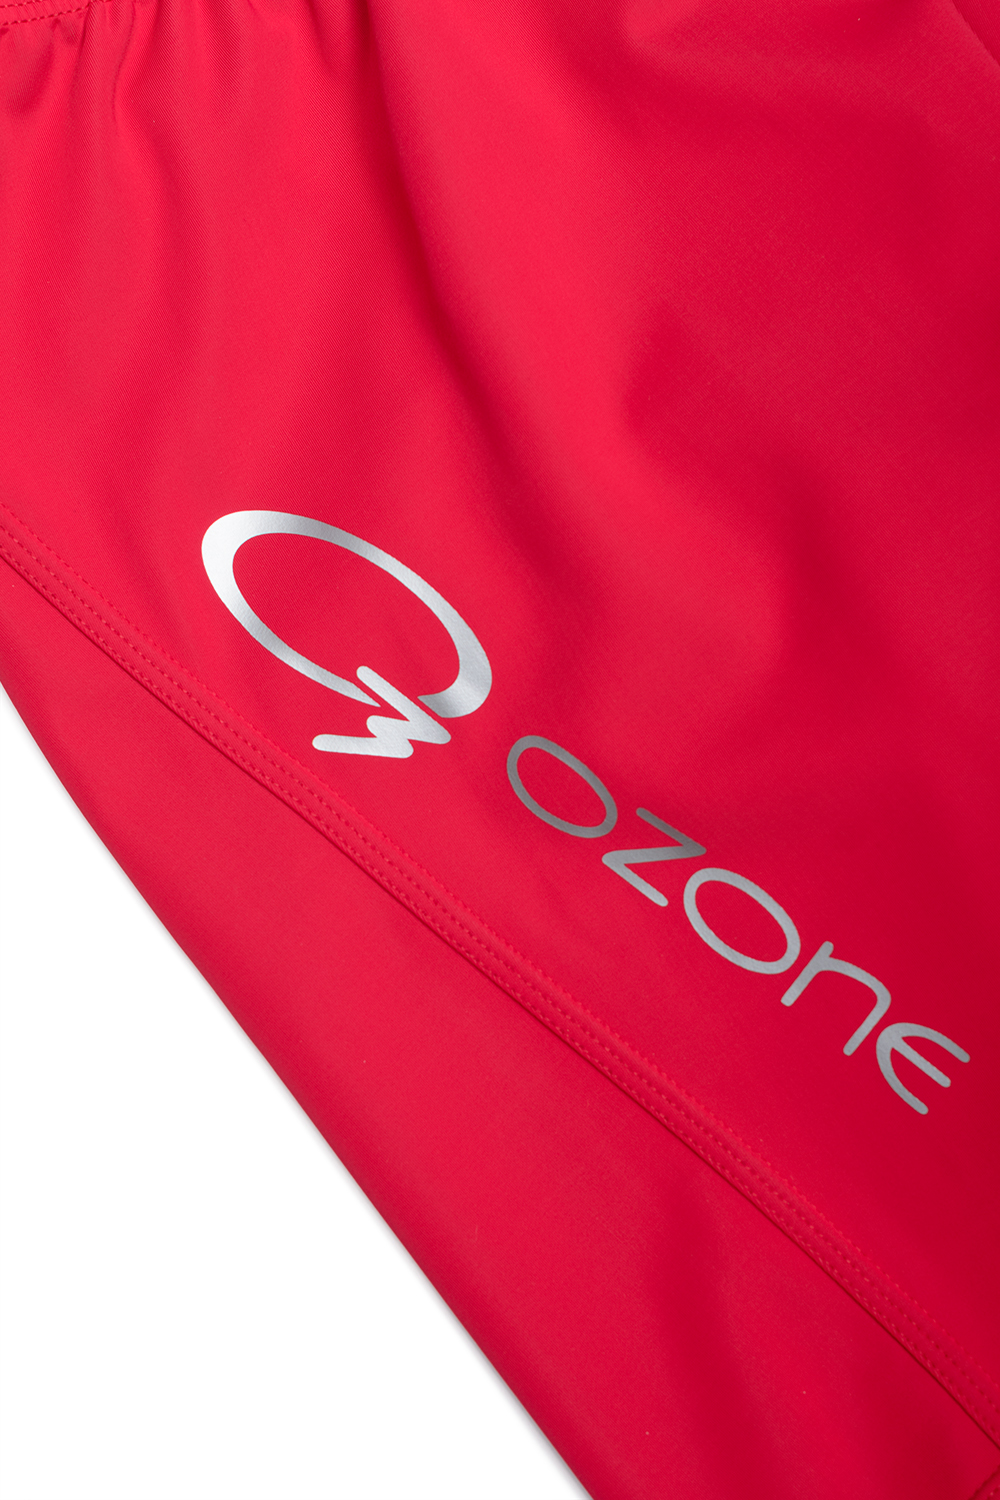 Брюки Pace из софт шелл купить онлайн в магазине экипировки O3 Ozone